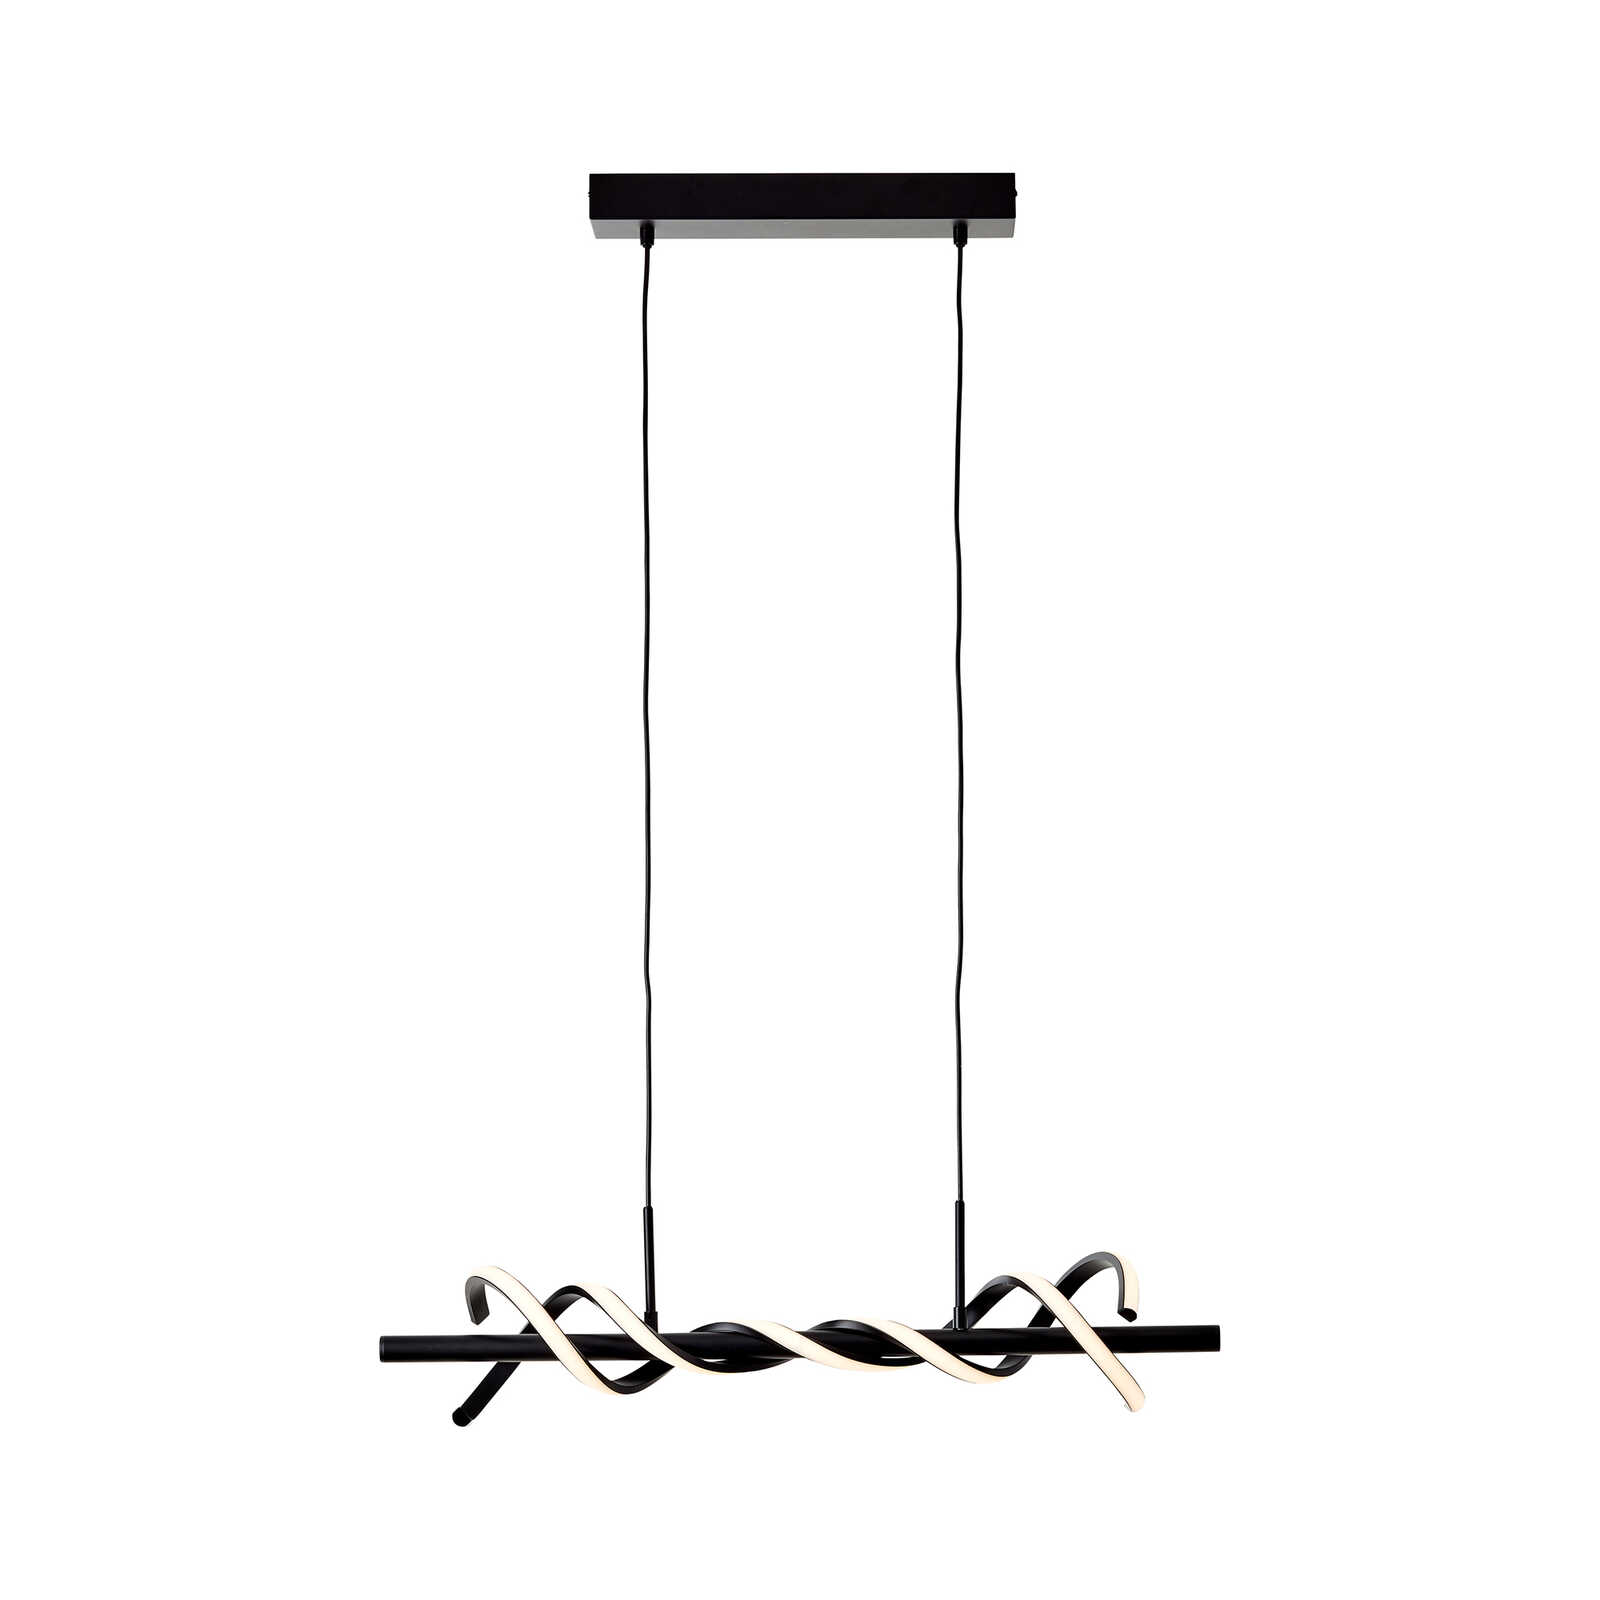 Kunststof hanglamp - Alexander 3 - Zwart
